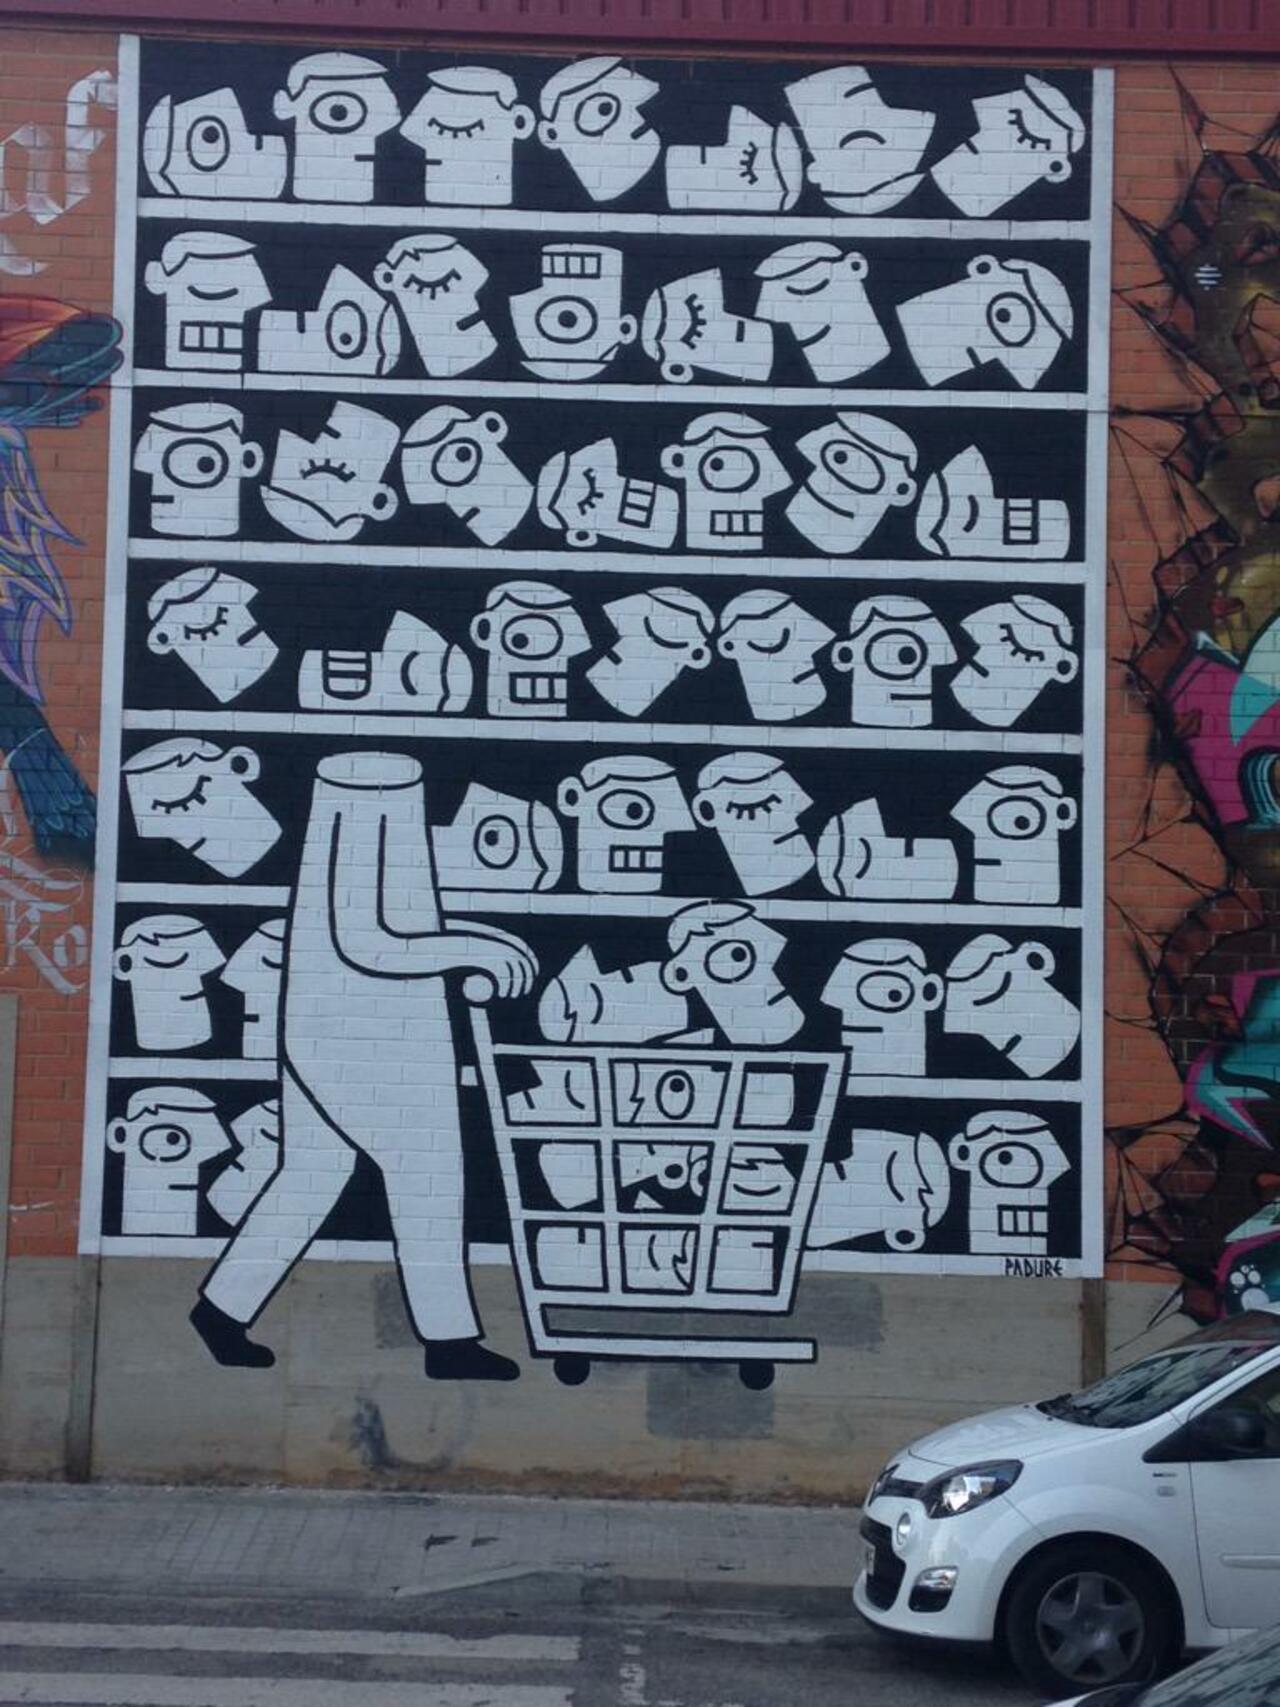 RT @ArtOnTheWalls: C/Doctor Mata, Sabadell, Catalunya. #IsArt? #NotArt #Graffiti #StreetArt #WallsSpeaks http://t.co/lMTB4hNZg3